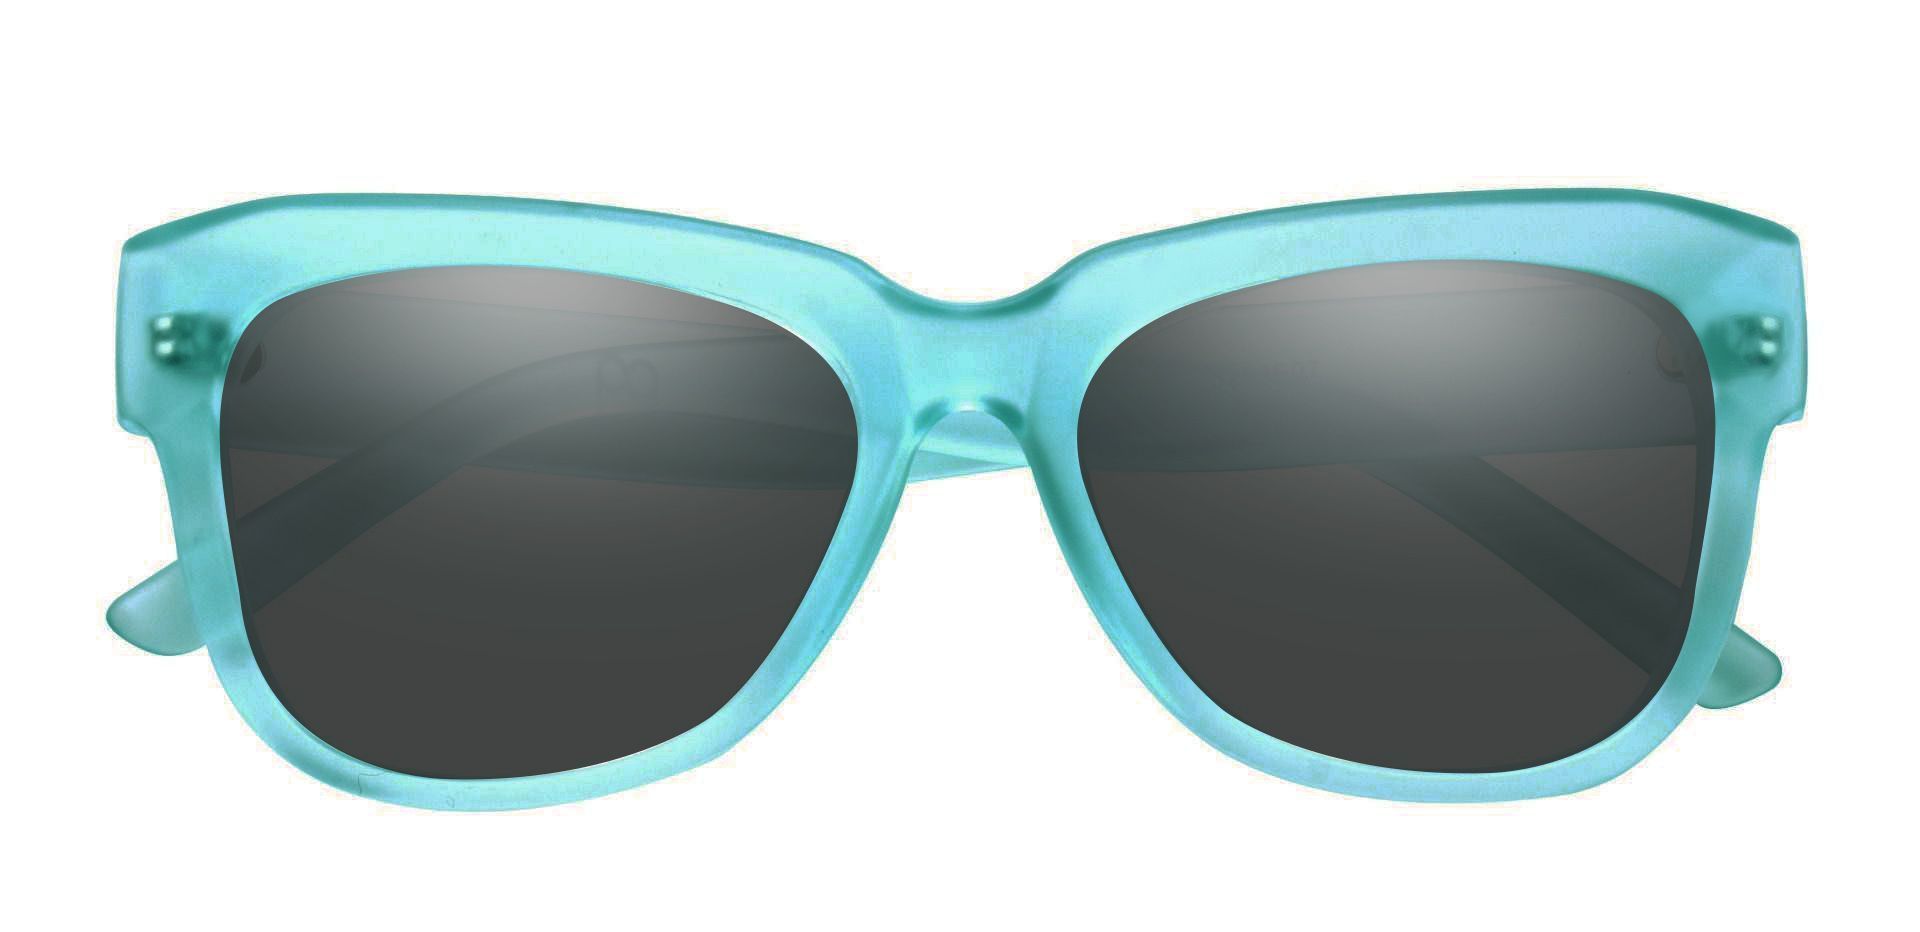 Gina Cat-Eye Progressive Sunglasses - Blue Frame With Gray Lenses